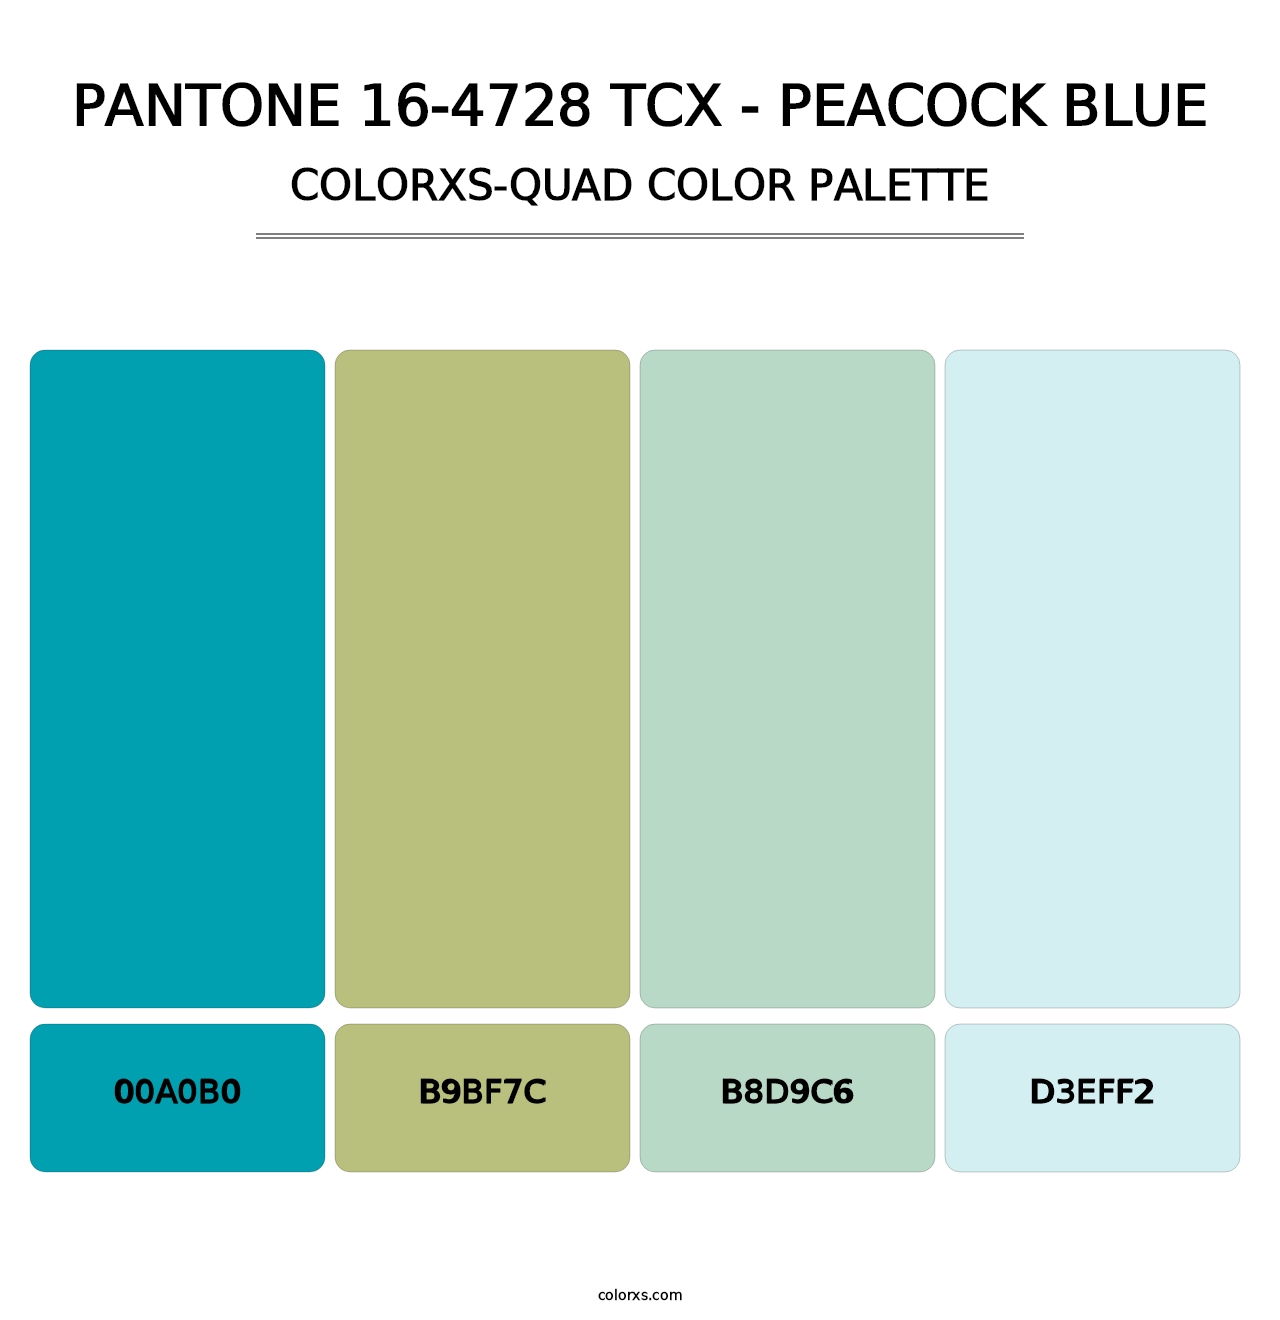 PANTONE 16-4728 TCX - Peacock Blue - Colorxs Quad Palette